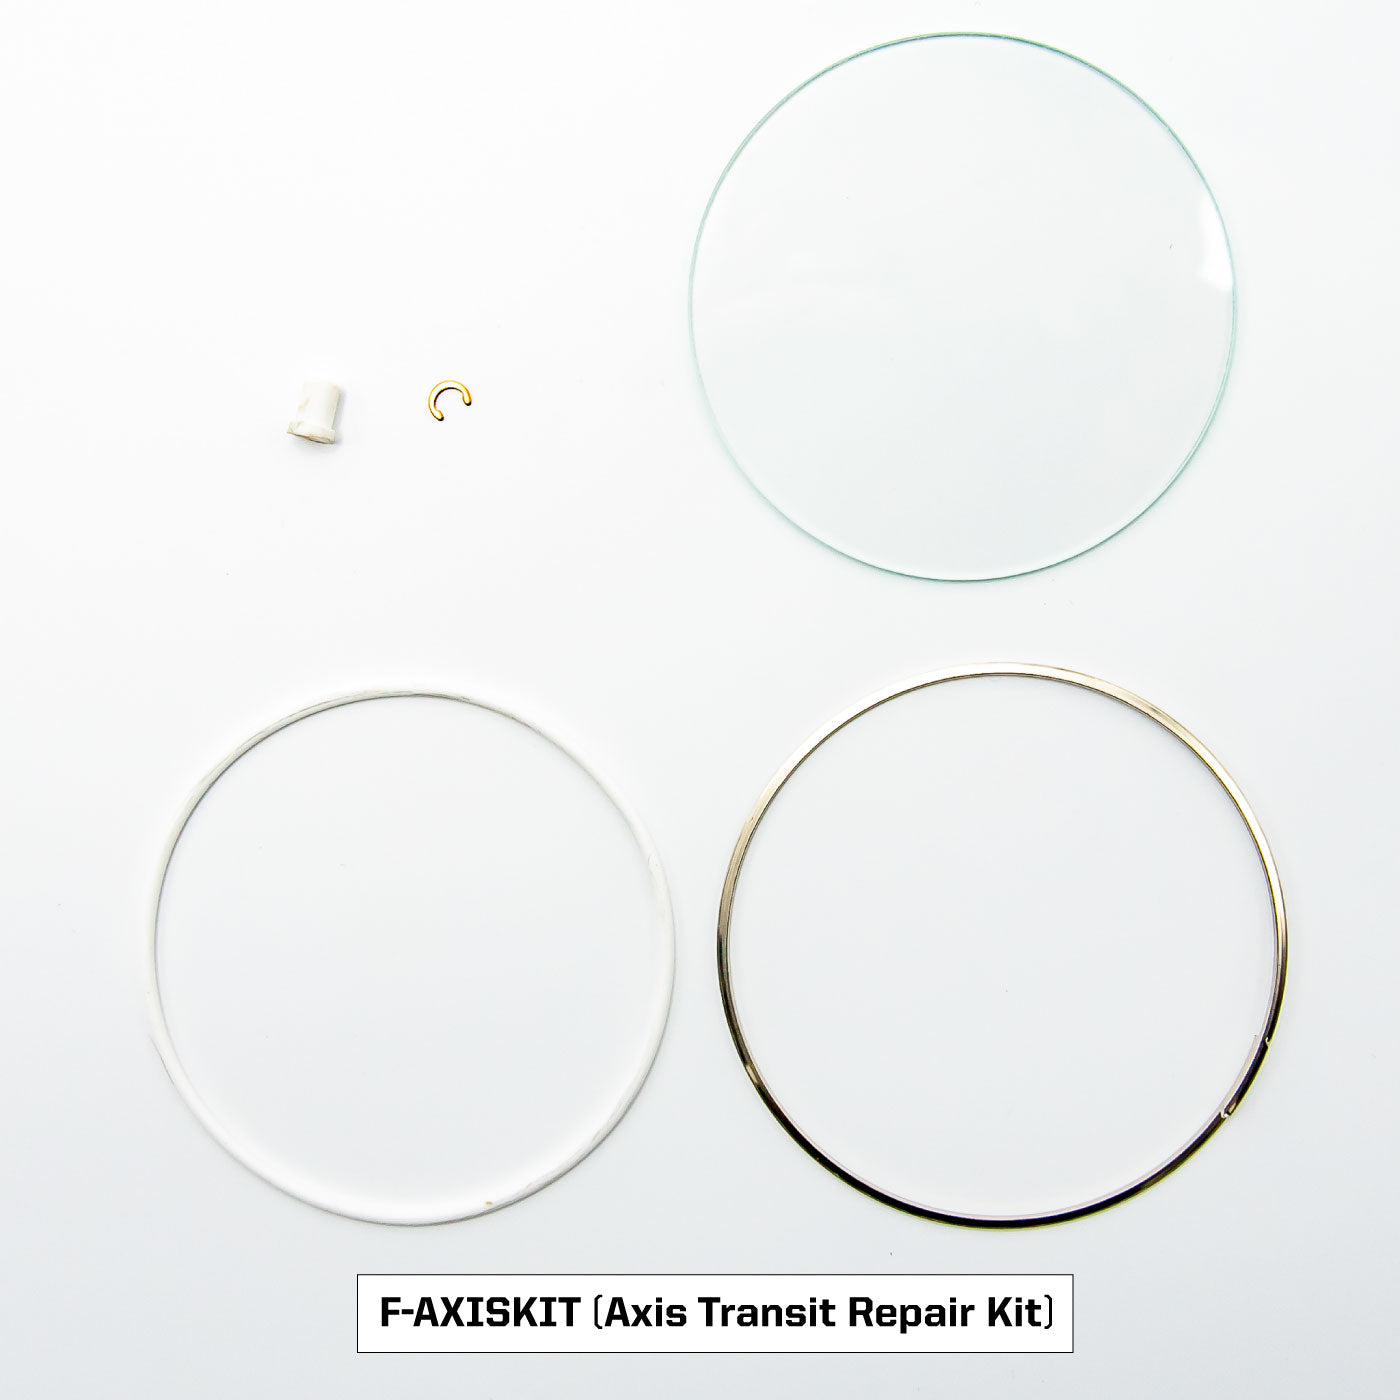 Transit and Omni Repair Kits